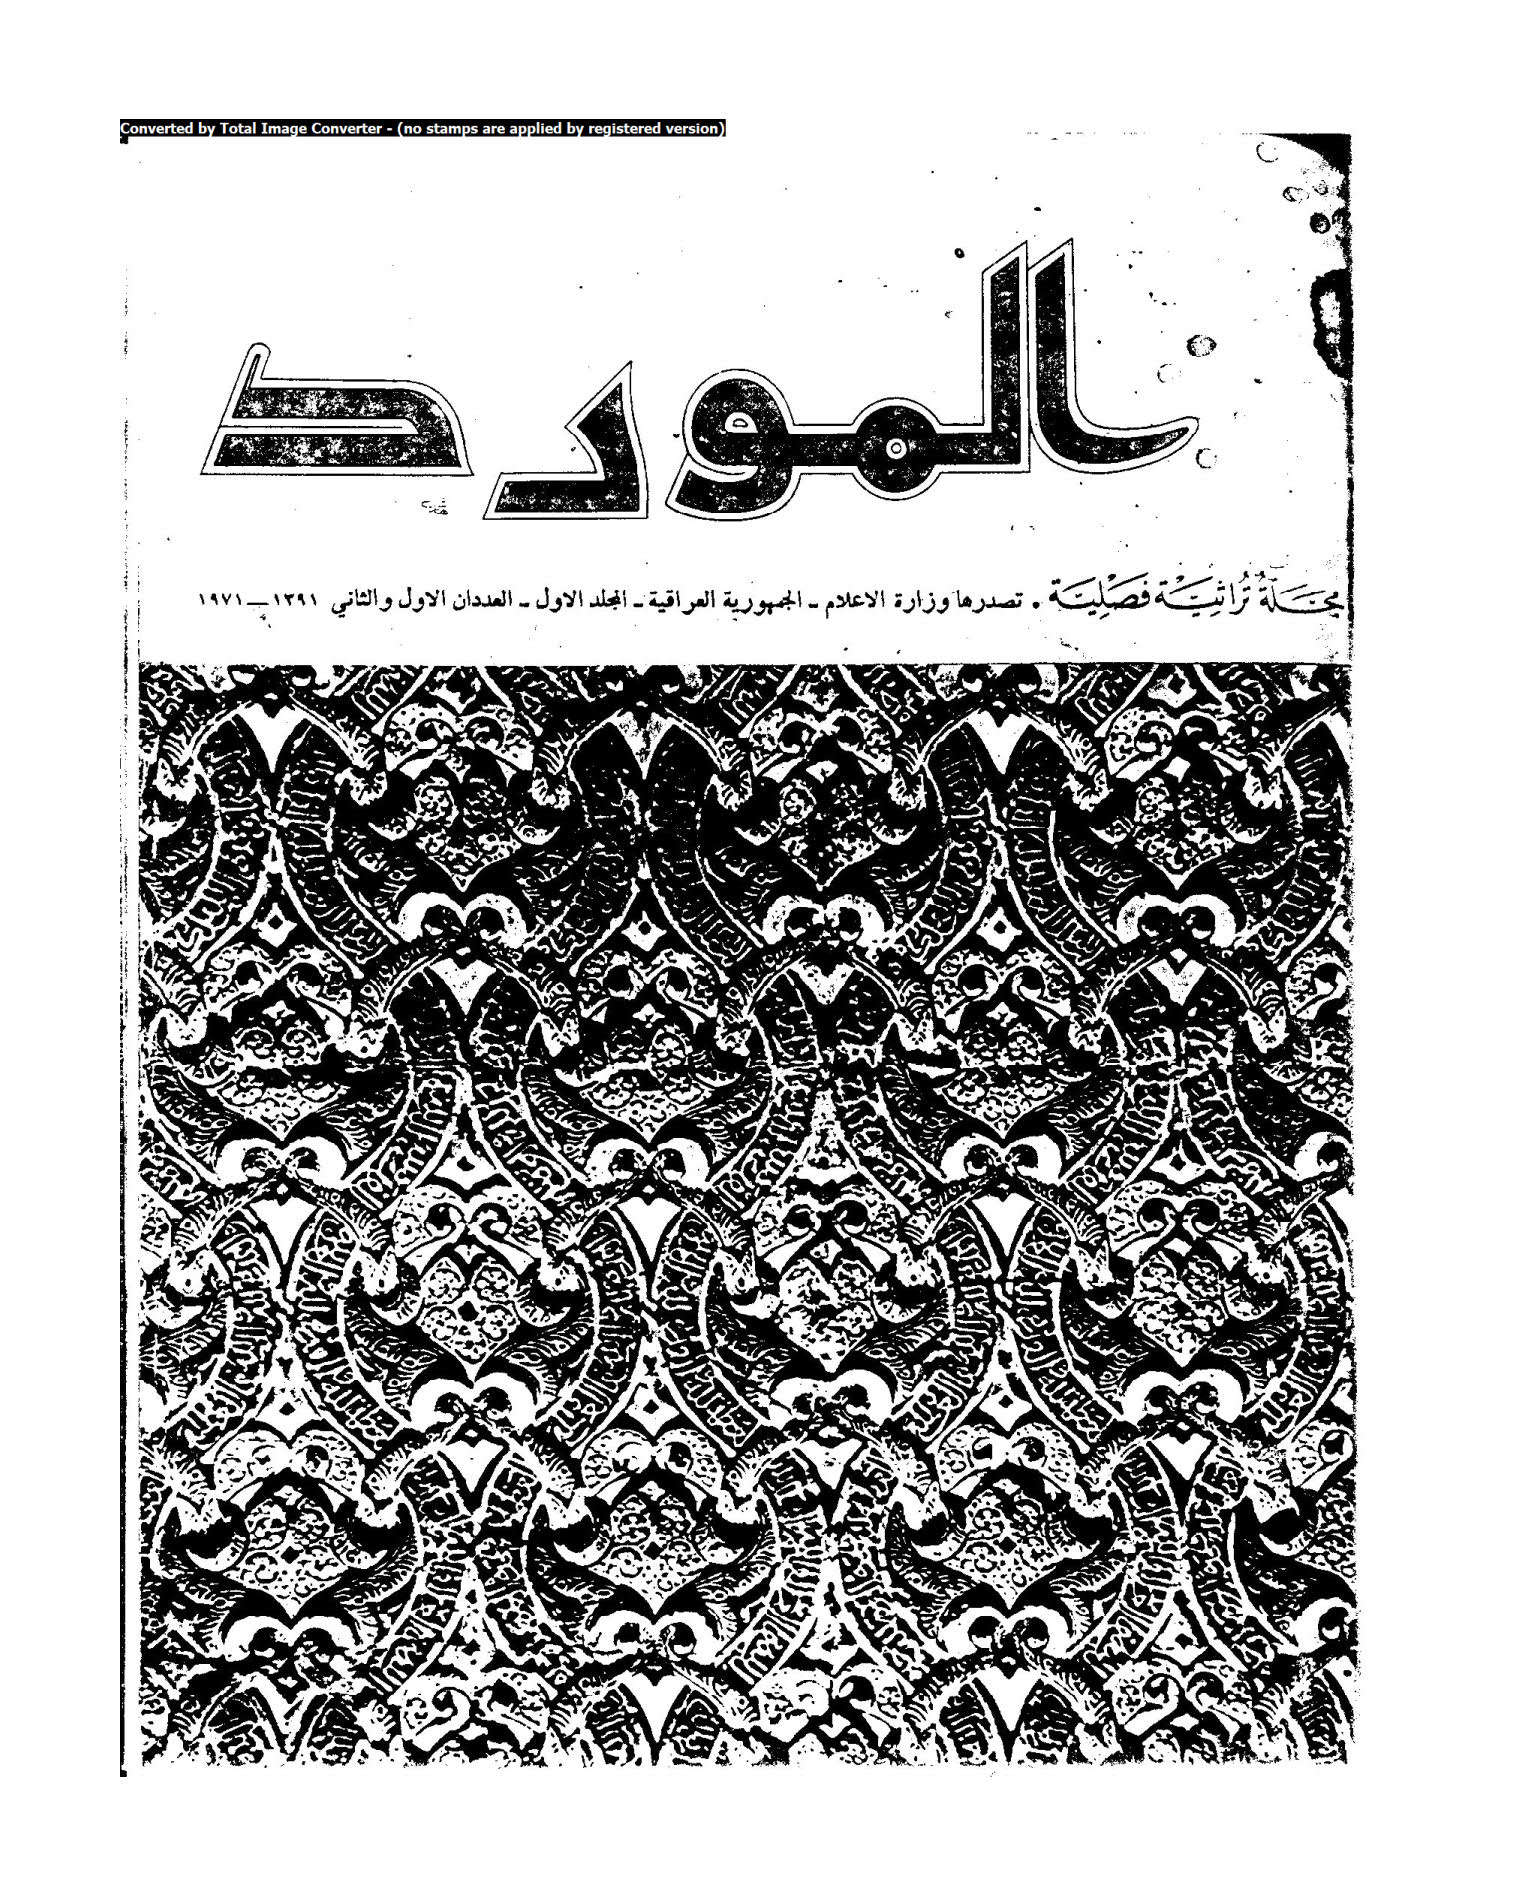 ذخائر التراث العربي في مكتبة جستر بيتي دبلن _ مقالة في مجلة المورد